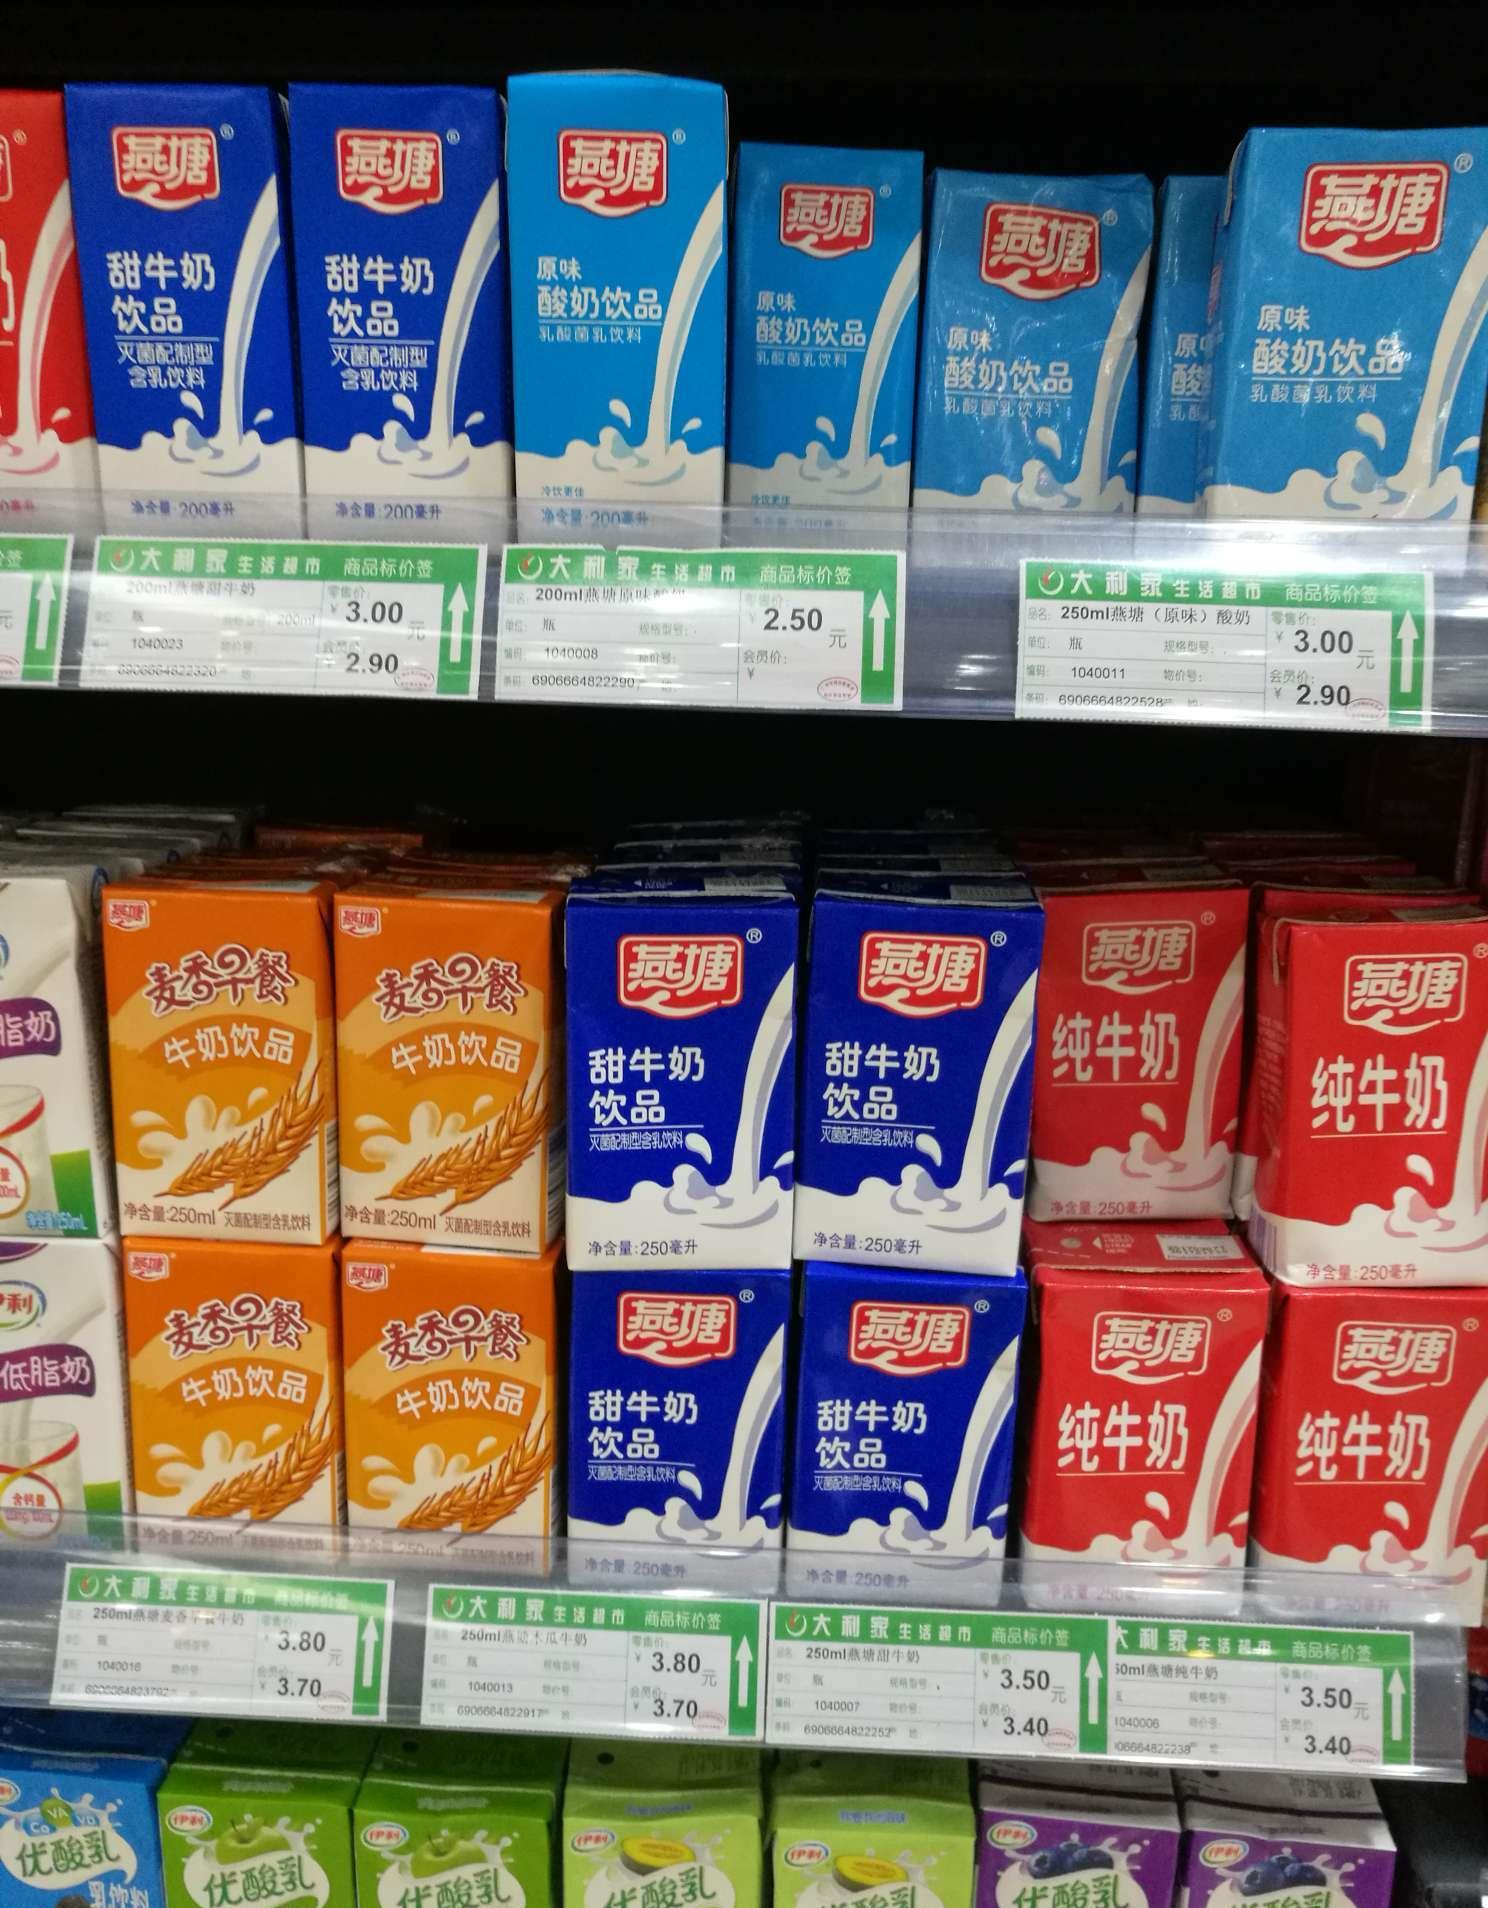 现在在广州一些小超市开始看到好多的燕塘牛奶,比以前推广力度大了